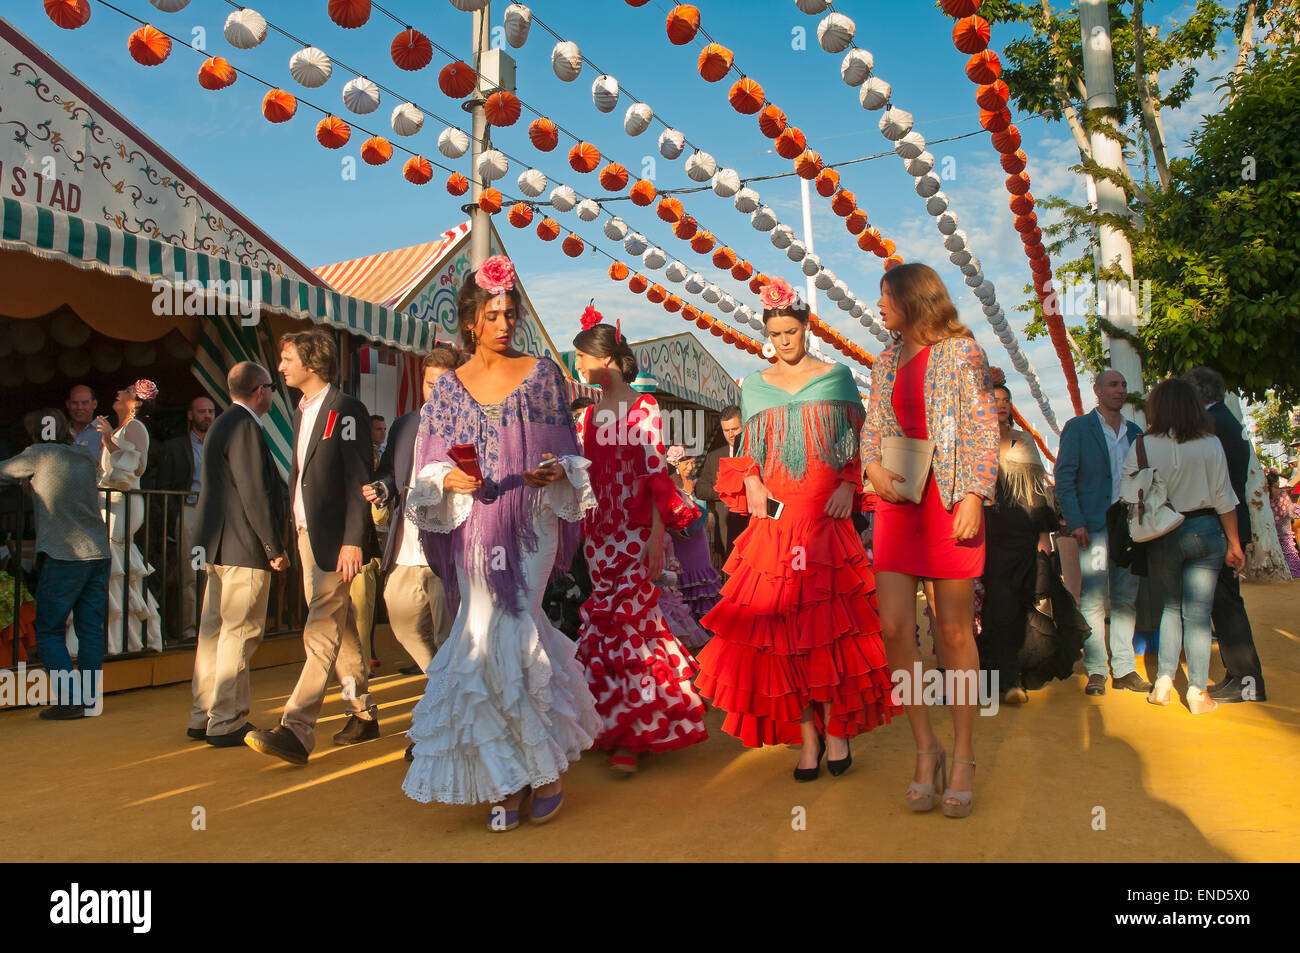 Foire d'avril, Les Femmes portant une robe flamenco traditionnel, Séville, Andalousie, Espagne, Europe Banque D'Images